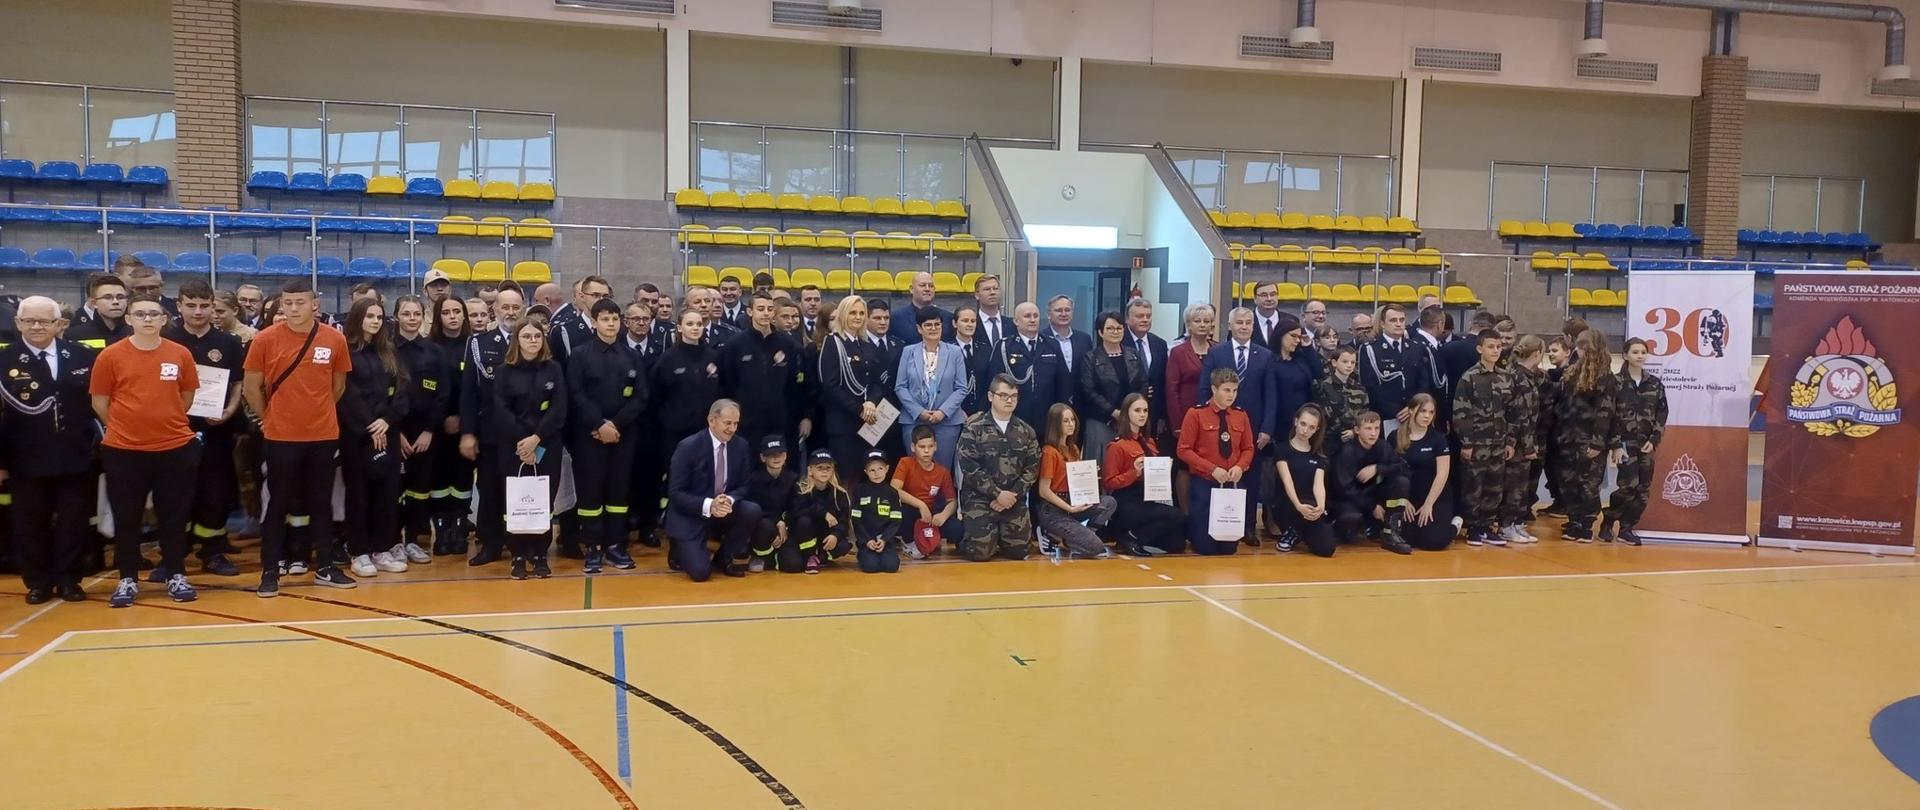 Uroczyste wręczenie promes dla Ochotniczych Straży Pożarnych na zakup sprzętu dla członków Młodzieżowych Drużyn Pożarniczych z terenu powiatu kłobuckiego